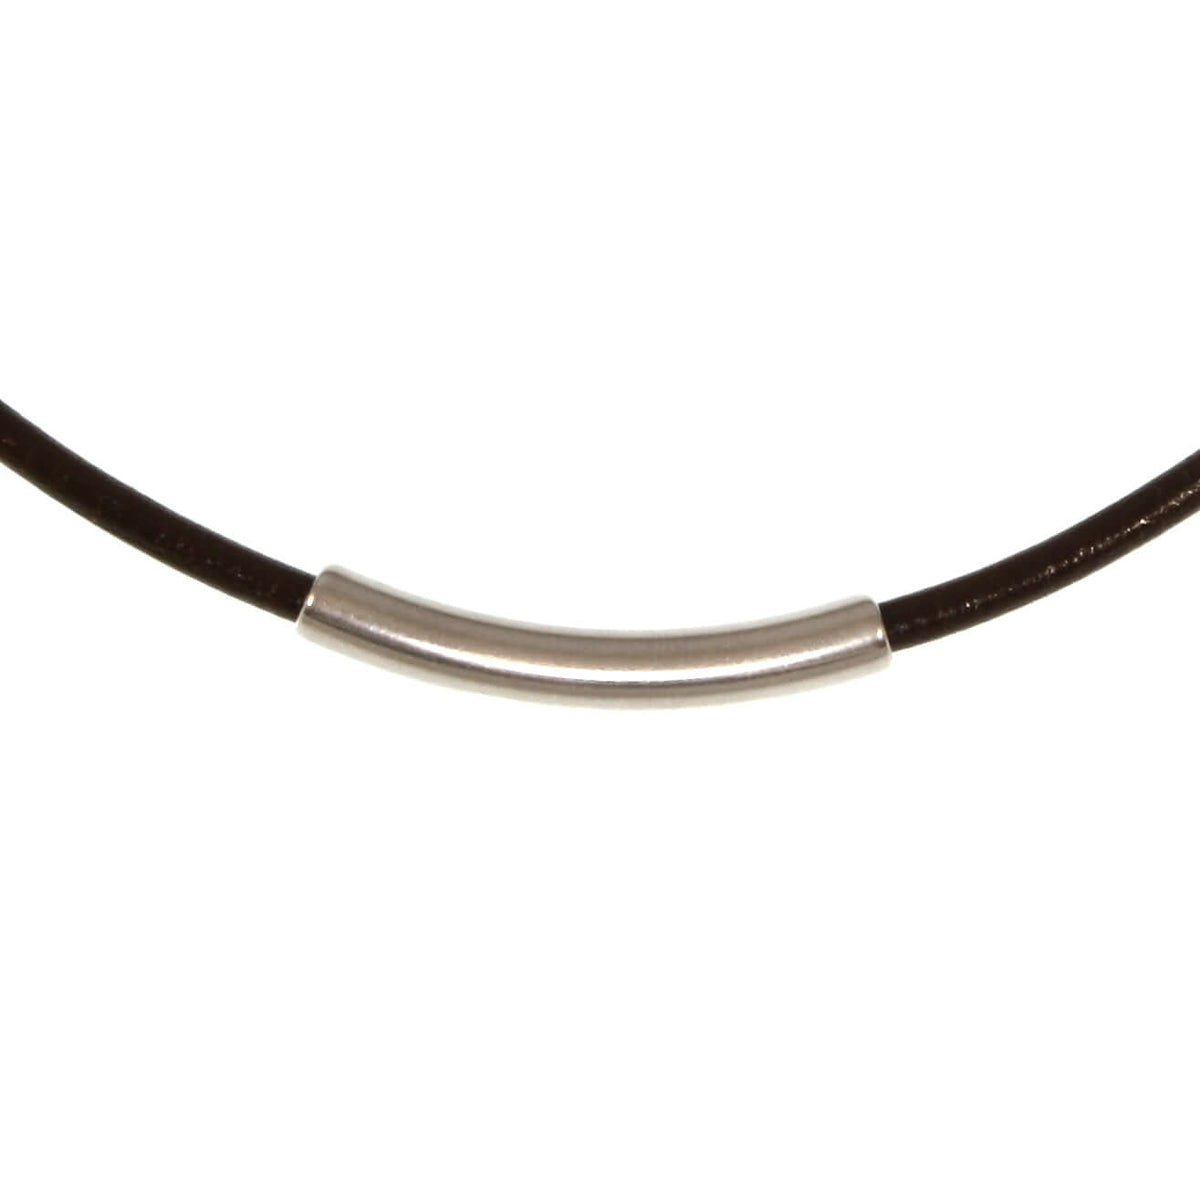 Damen-Leder-halskette-curve-Braun-riemen-massiv-Edelstahlverschluss-detail-wavepirate-shop-r